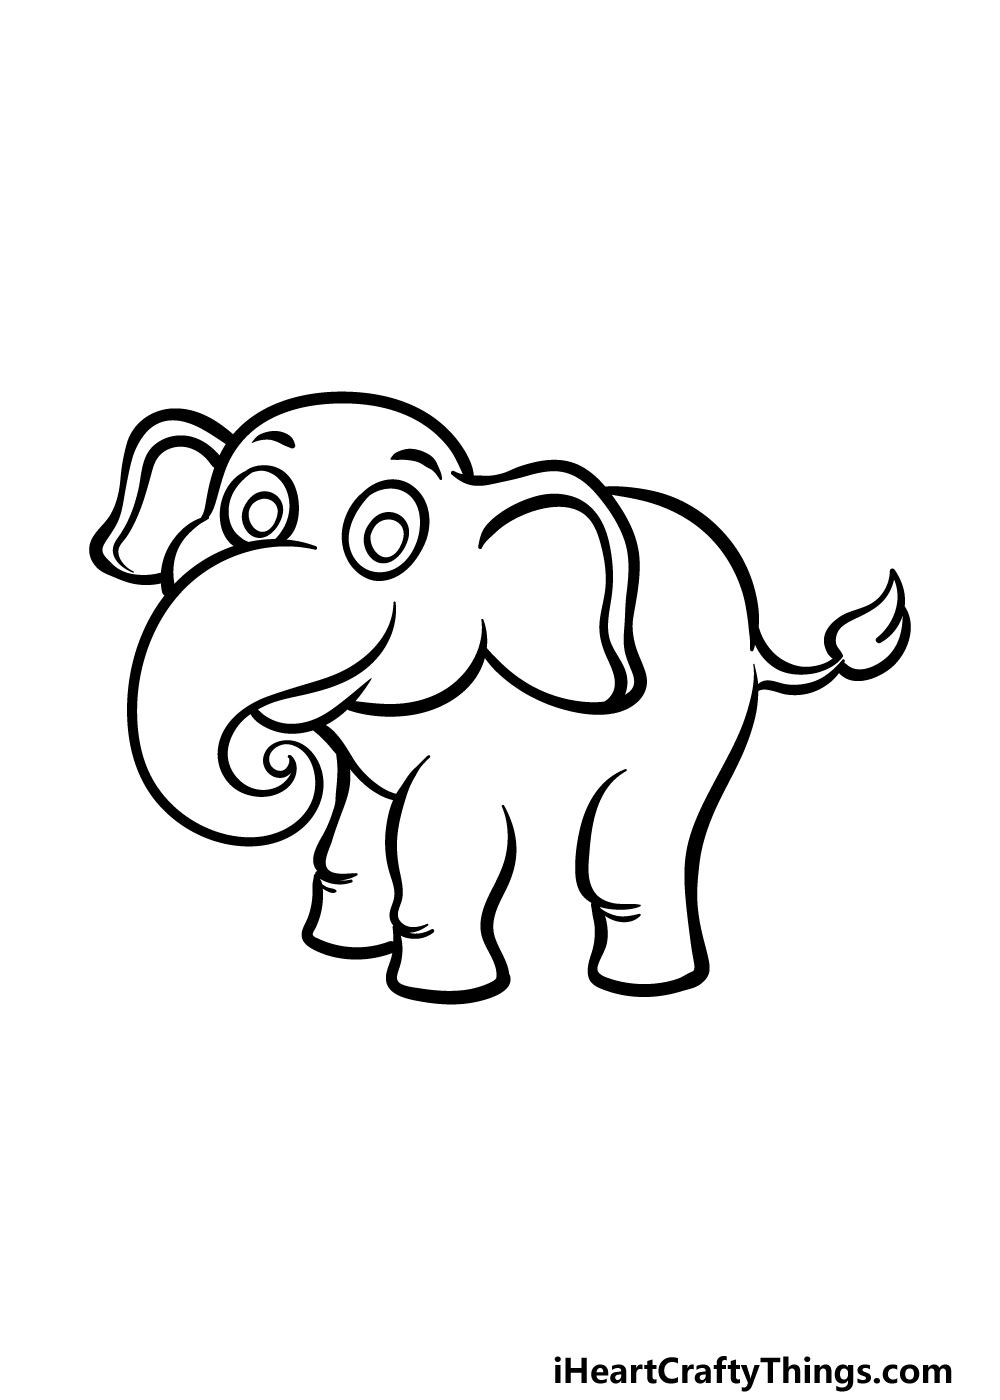 Cartoon Elephant Drawing - How To Draw A Cartoon Elephant Step By Step